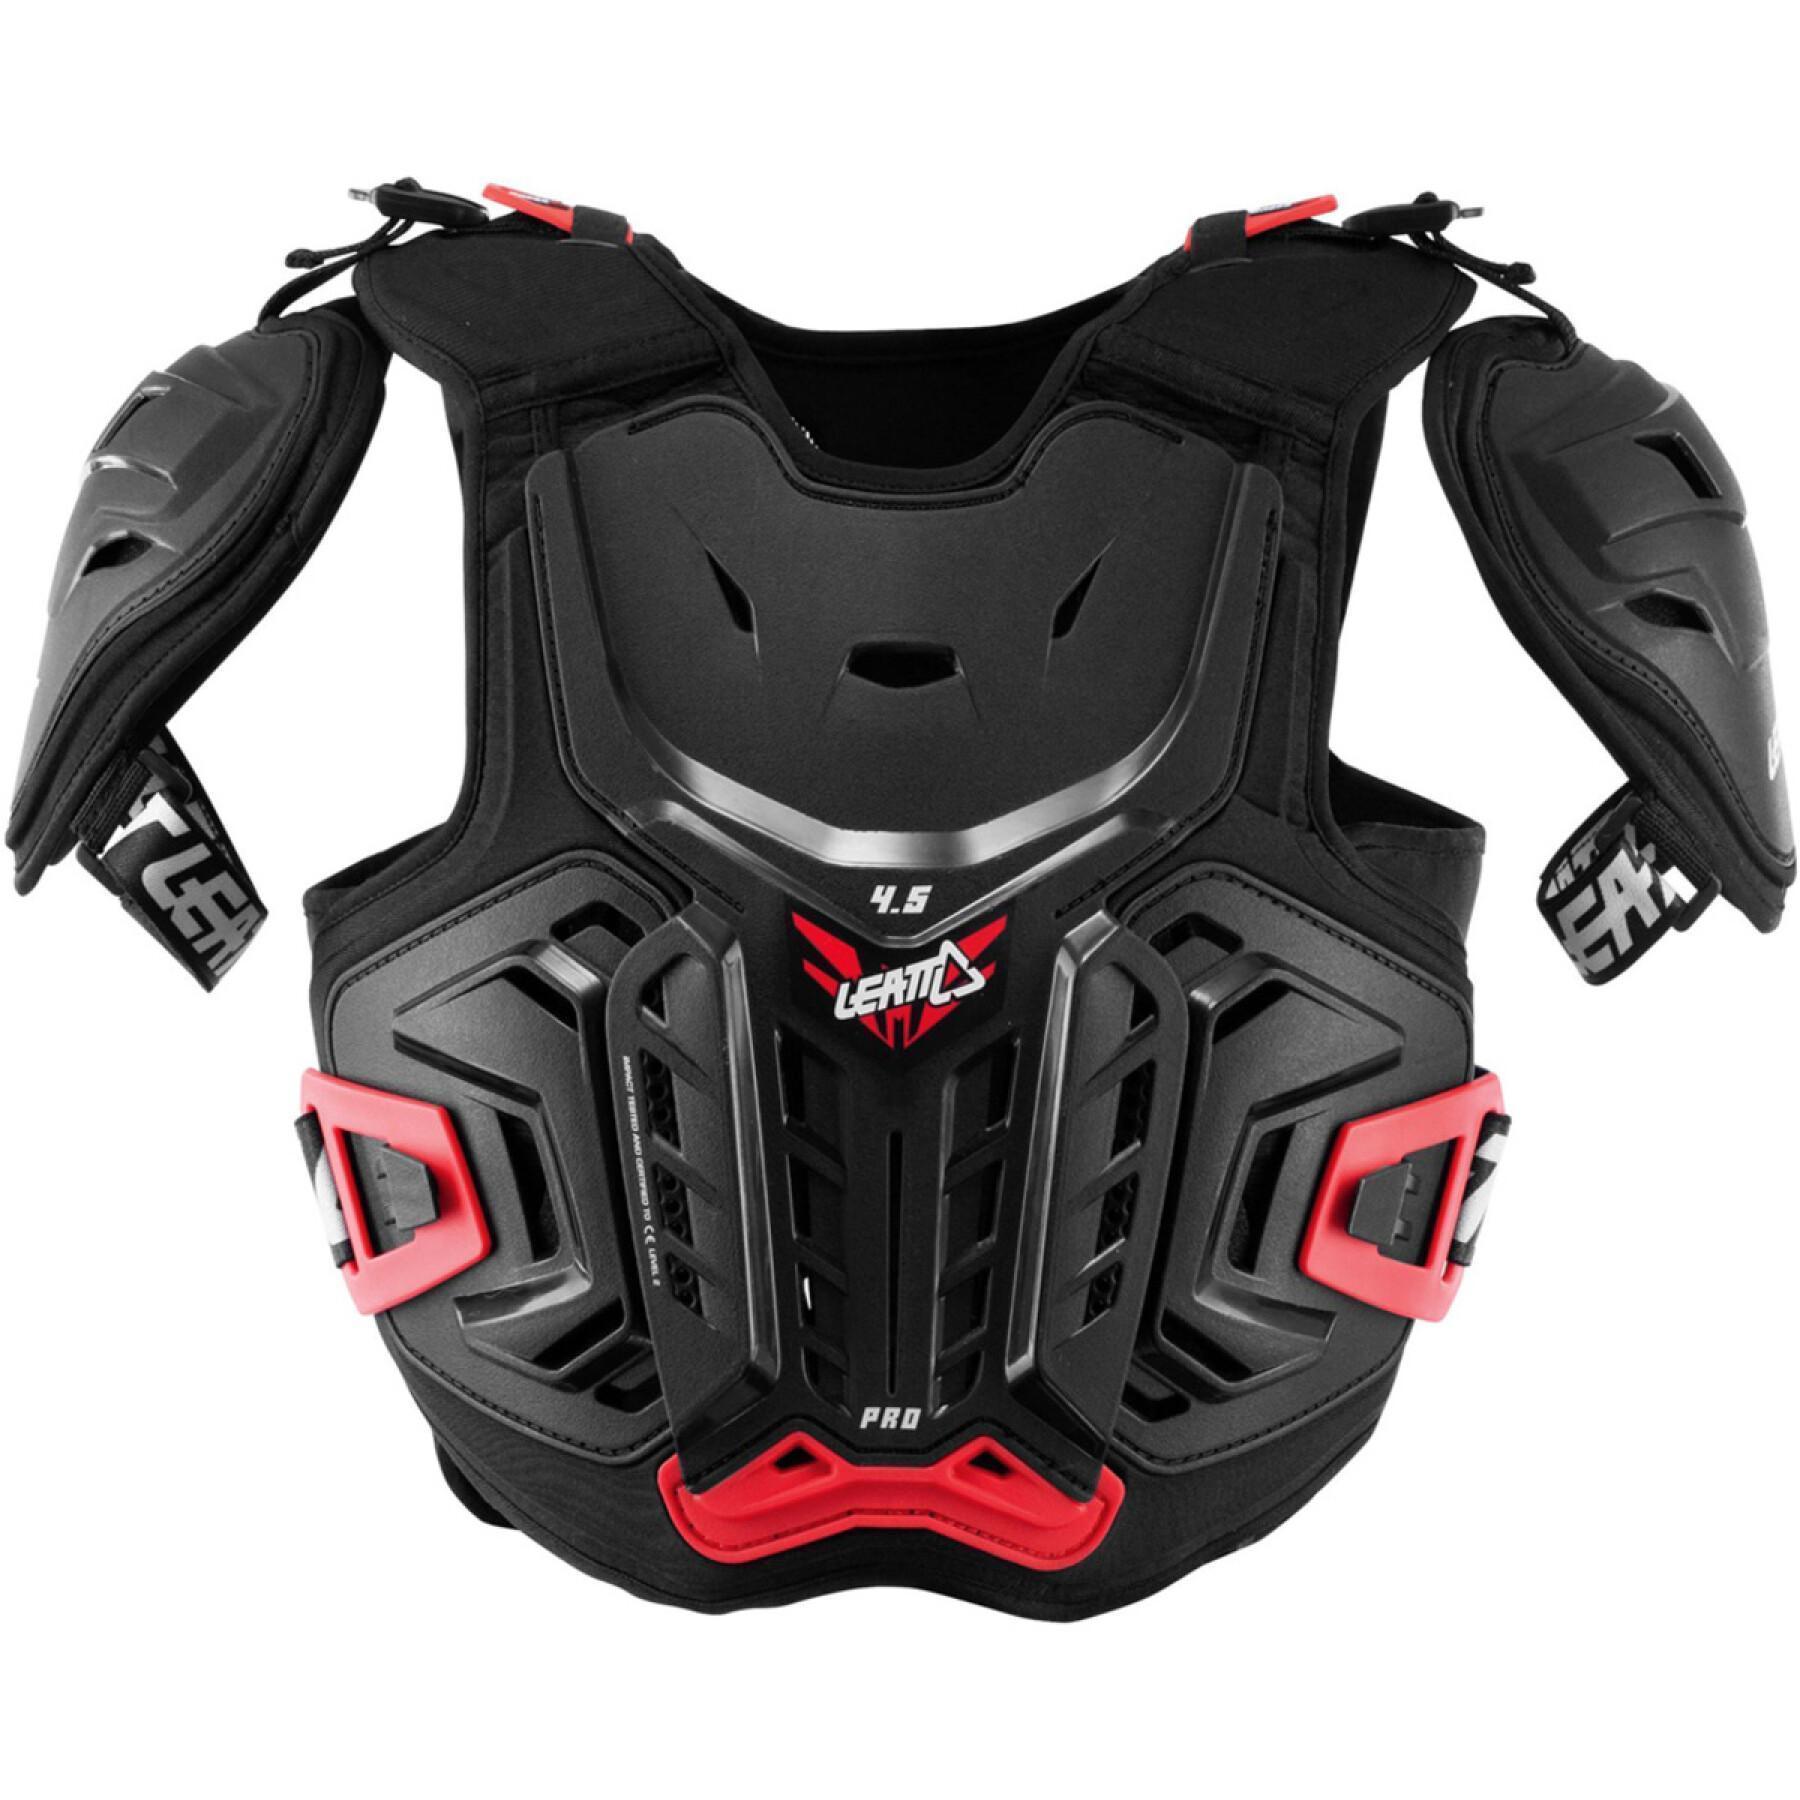 Protetor de peito de motocicleta para crianças Leatt cuirasse 4.5 Pro